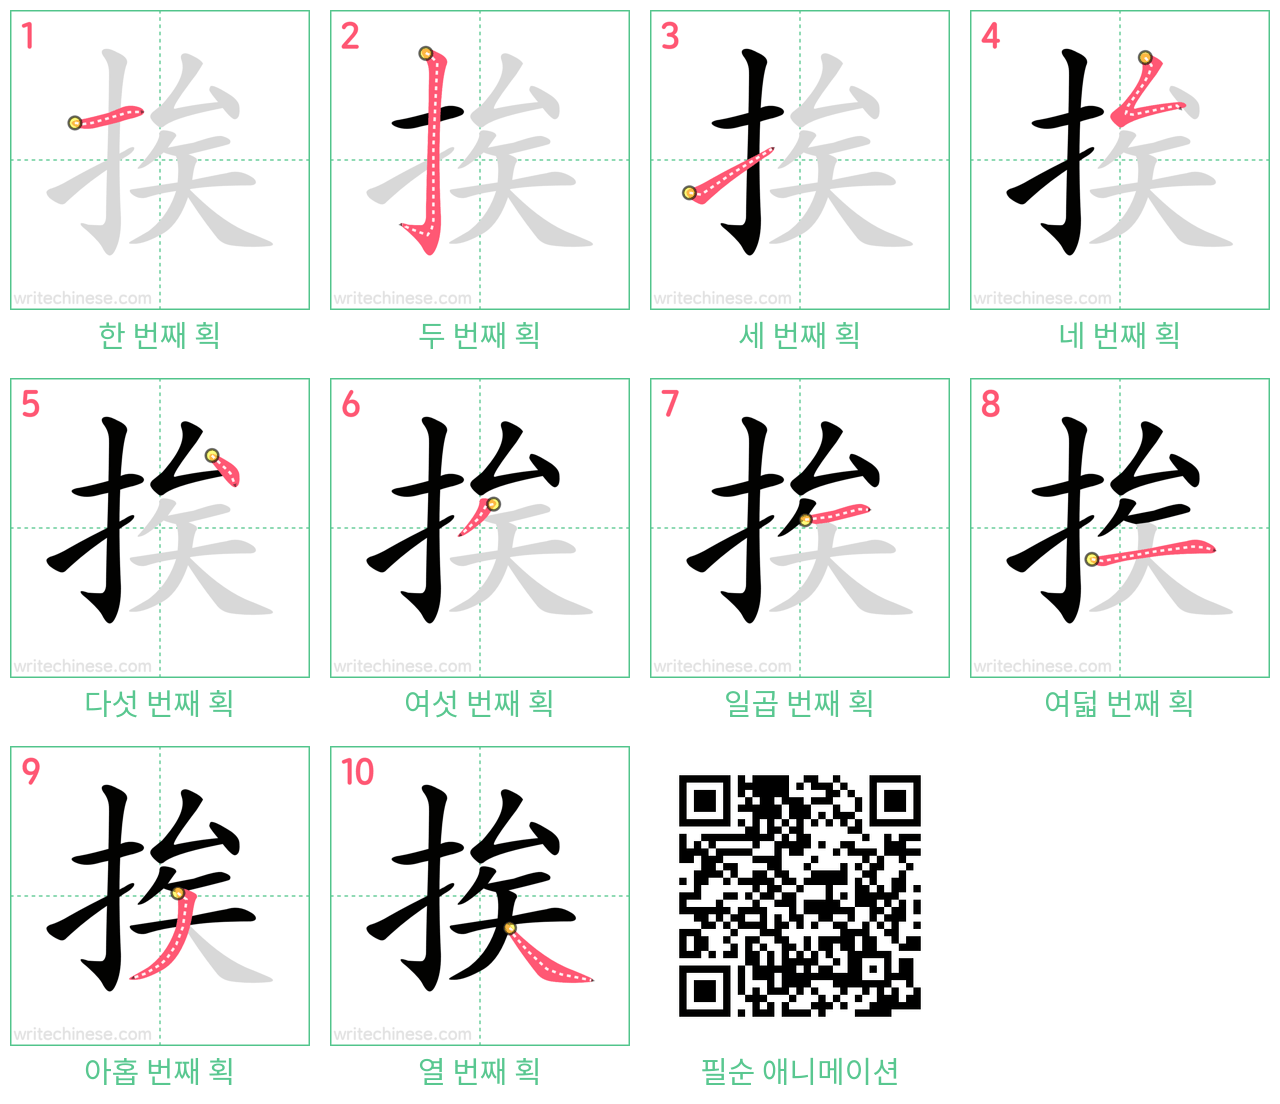 挨 step-by-step stroke order diagrams